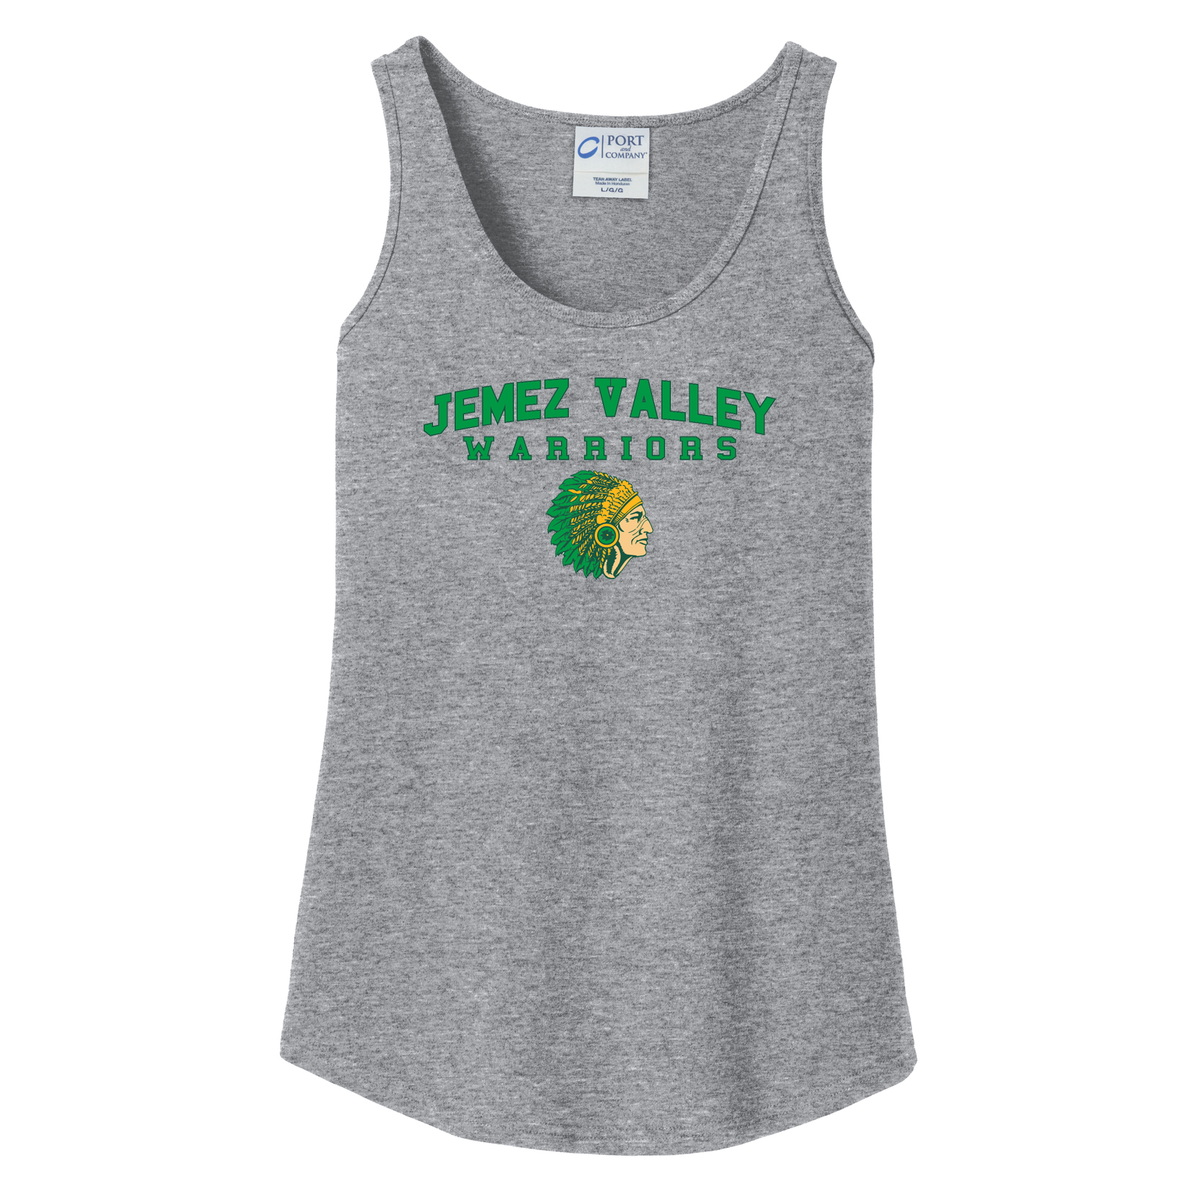 Jemez Valley Warriors Women's Tank Top